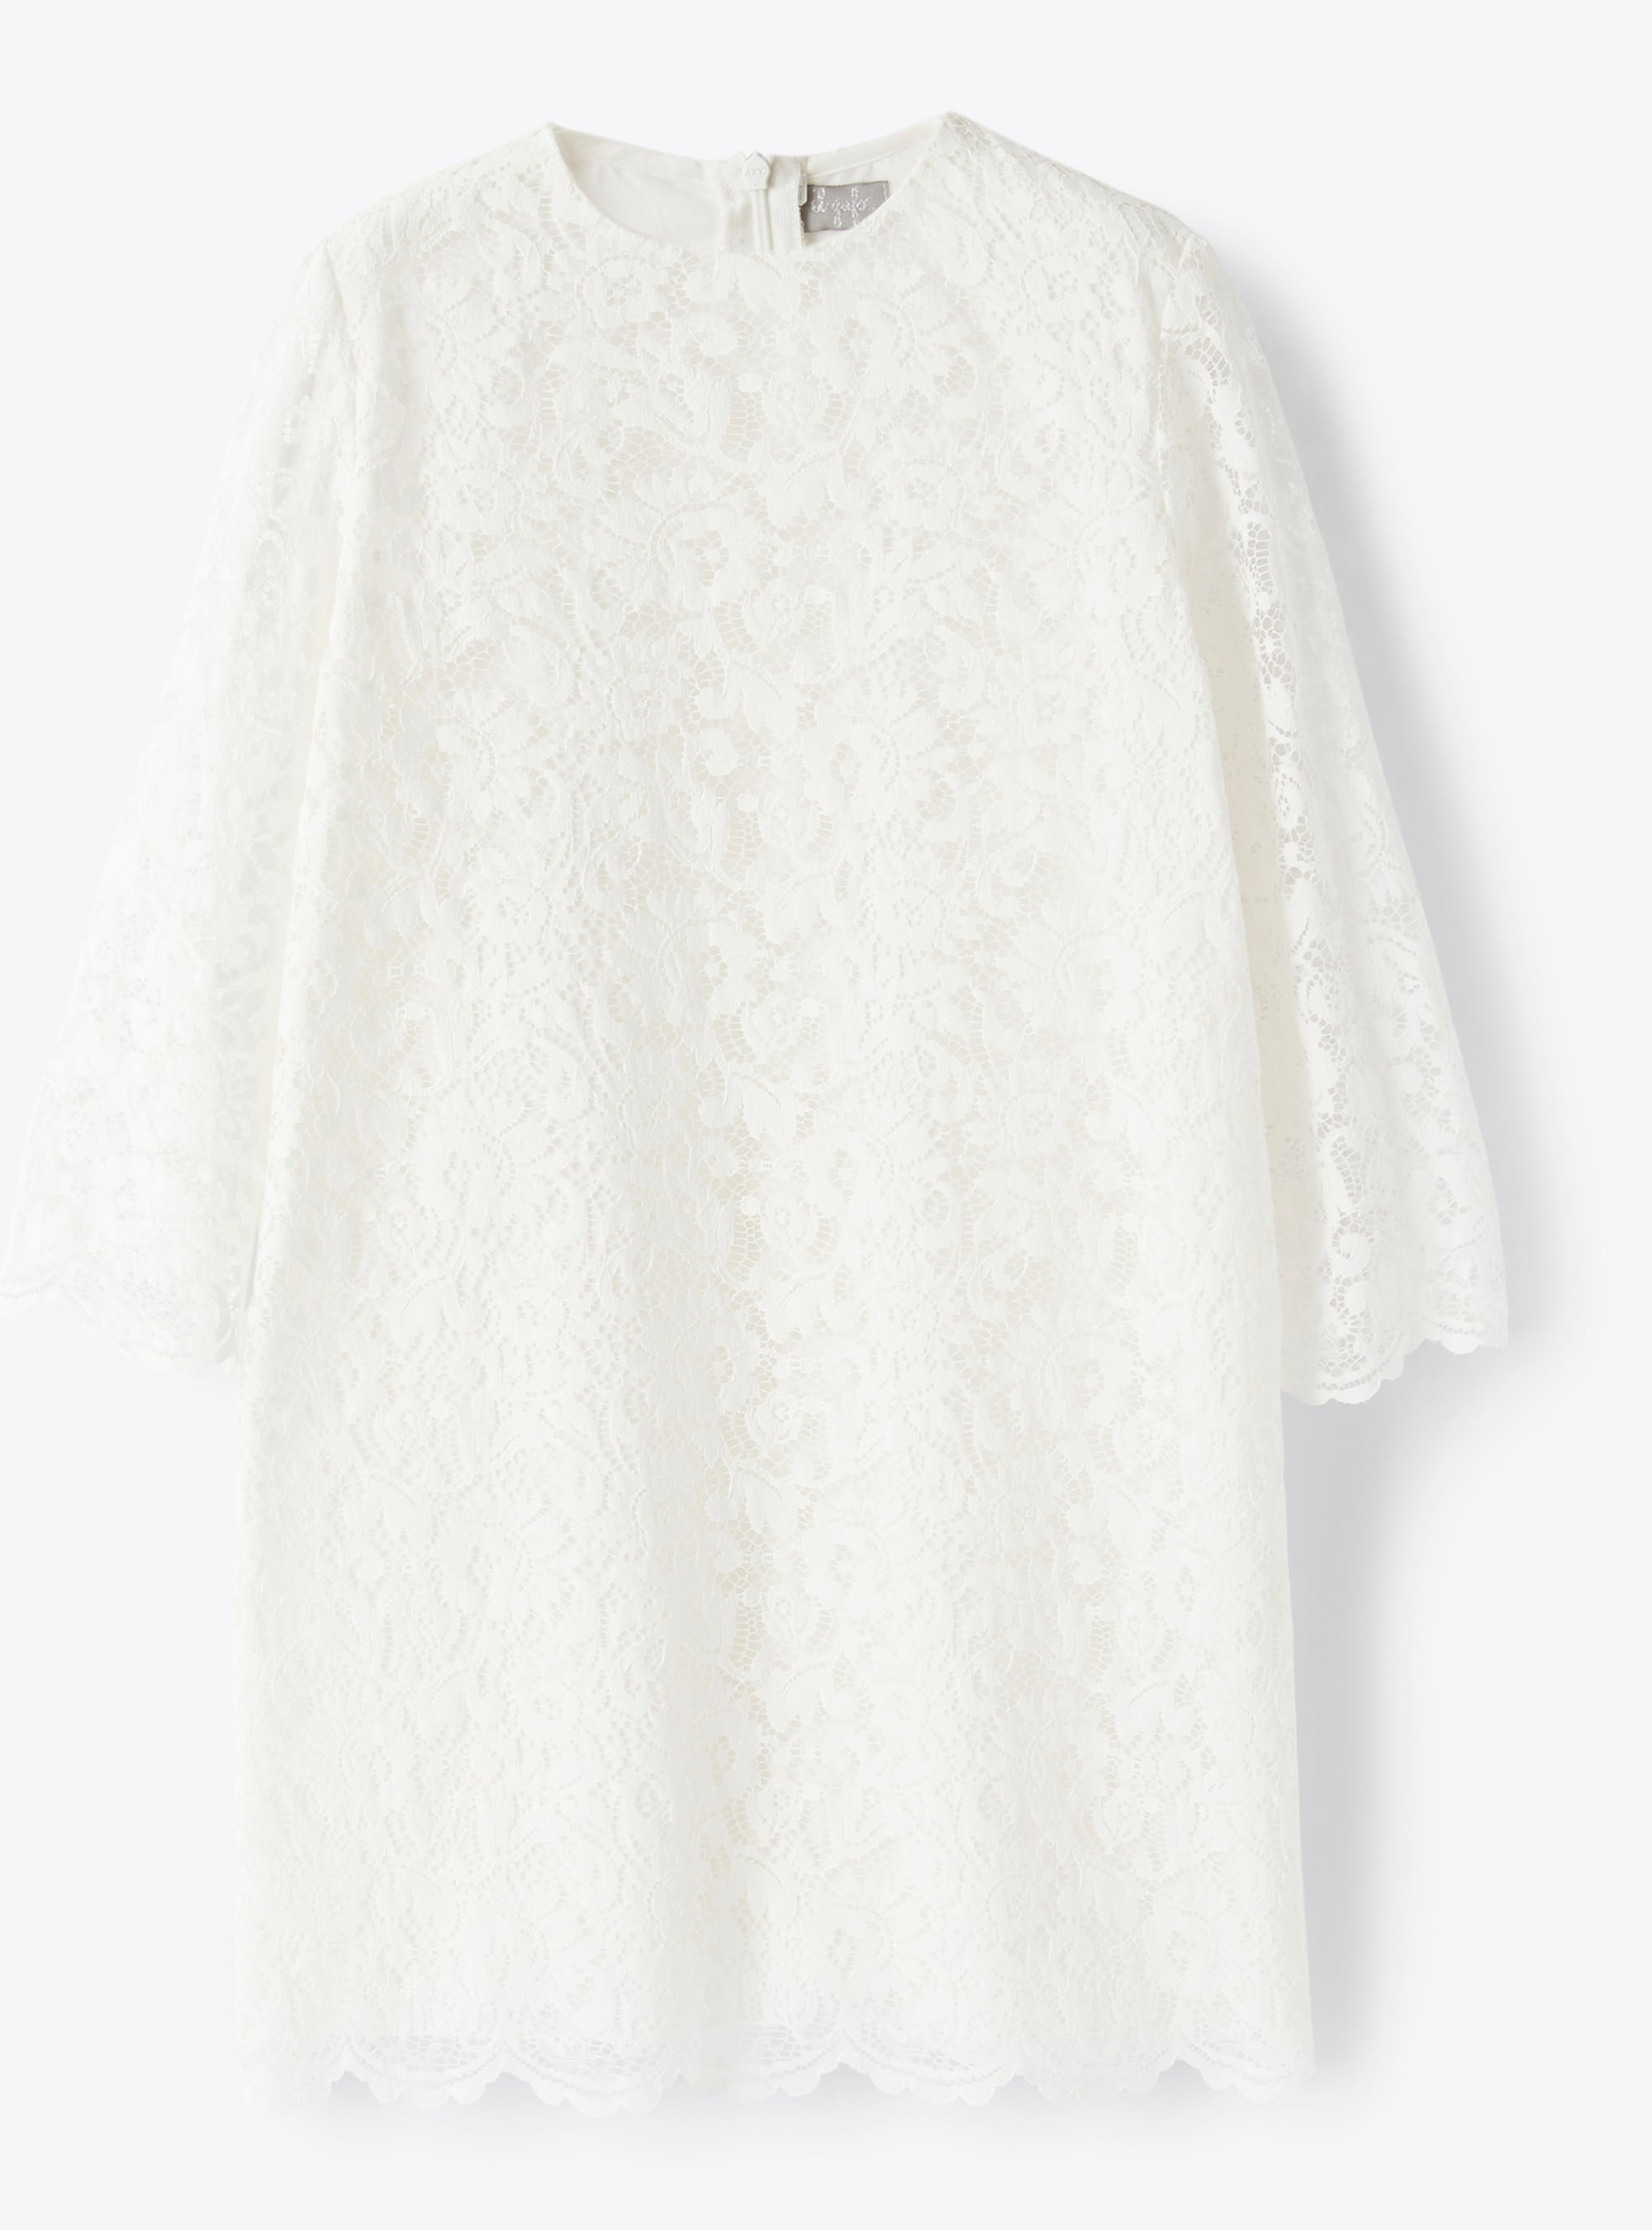 Short A-line dress in cotton lace - Dresses - Il Gufo